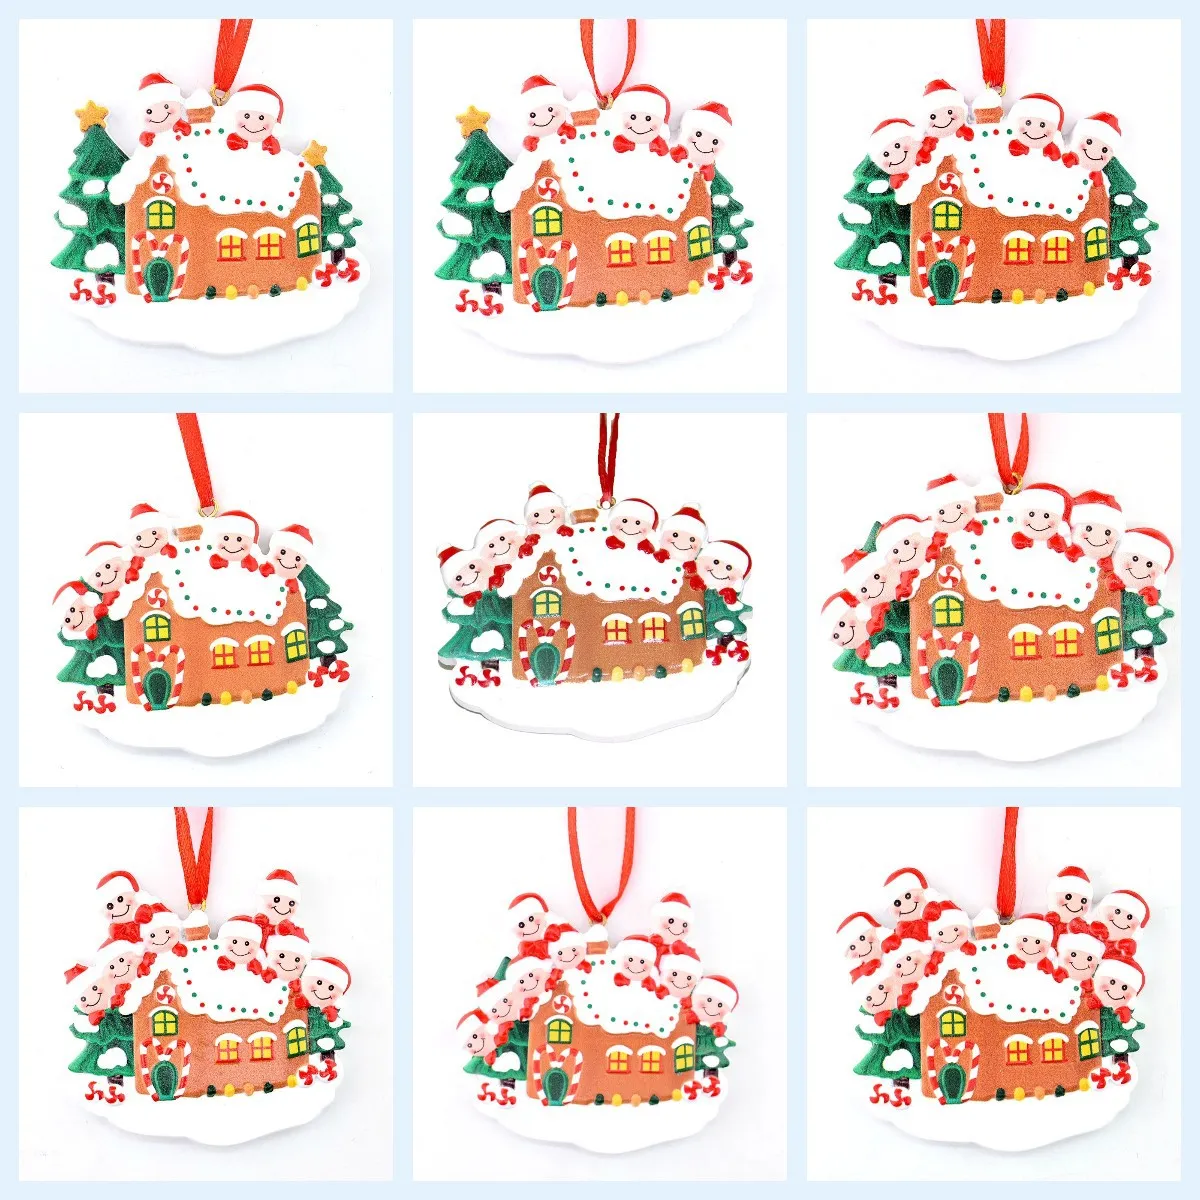 Actualizado PERSONALIZADO 2021 Adornos navideños Decoraciones Cuarentena Survivor Kit de ornamentos Juguetes creativos para Muñeco de nieve Mano Familia desinfectada 1-9 DIY